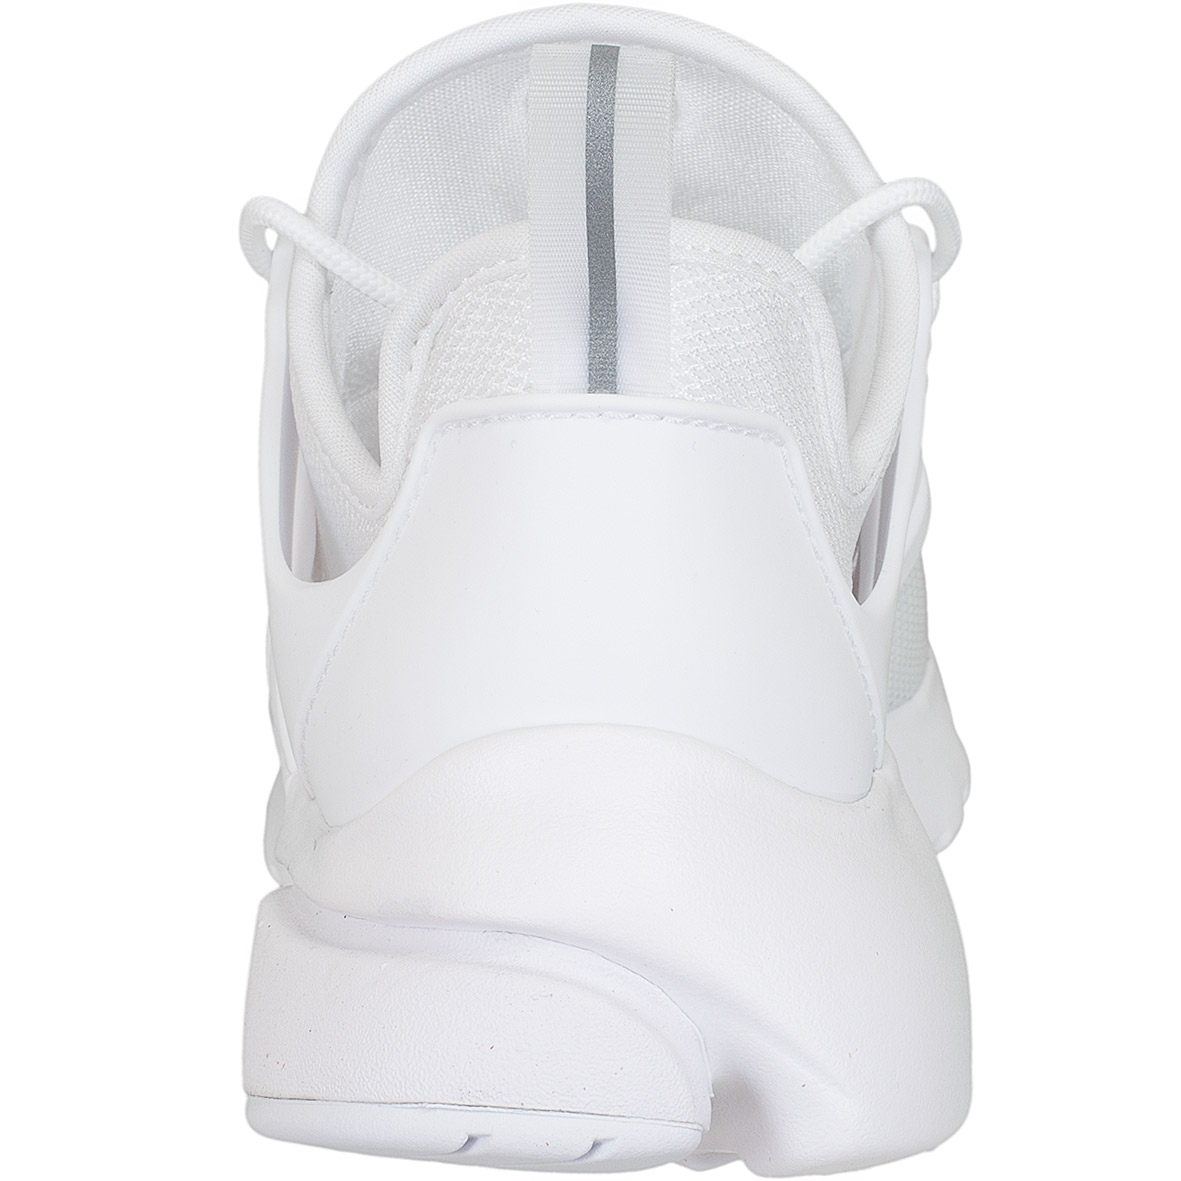 ☆ Nike Damen Sneaker Air Presto Ultra BR weiß/weiß - hier bestellen!